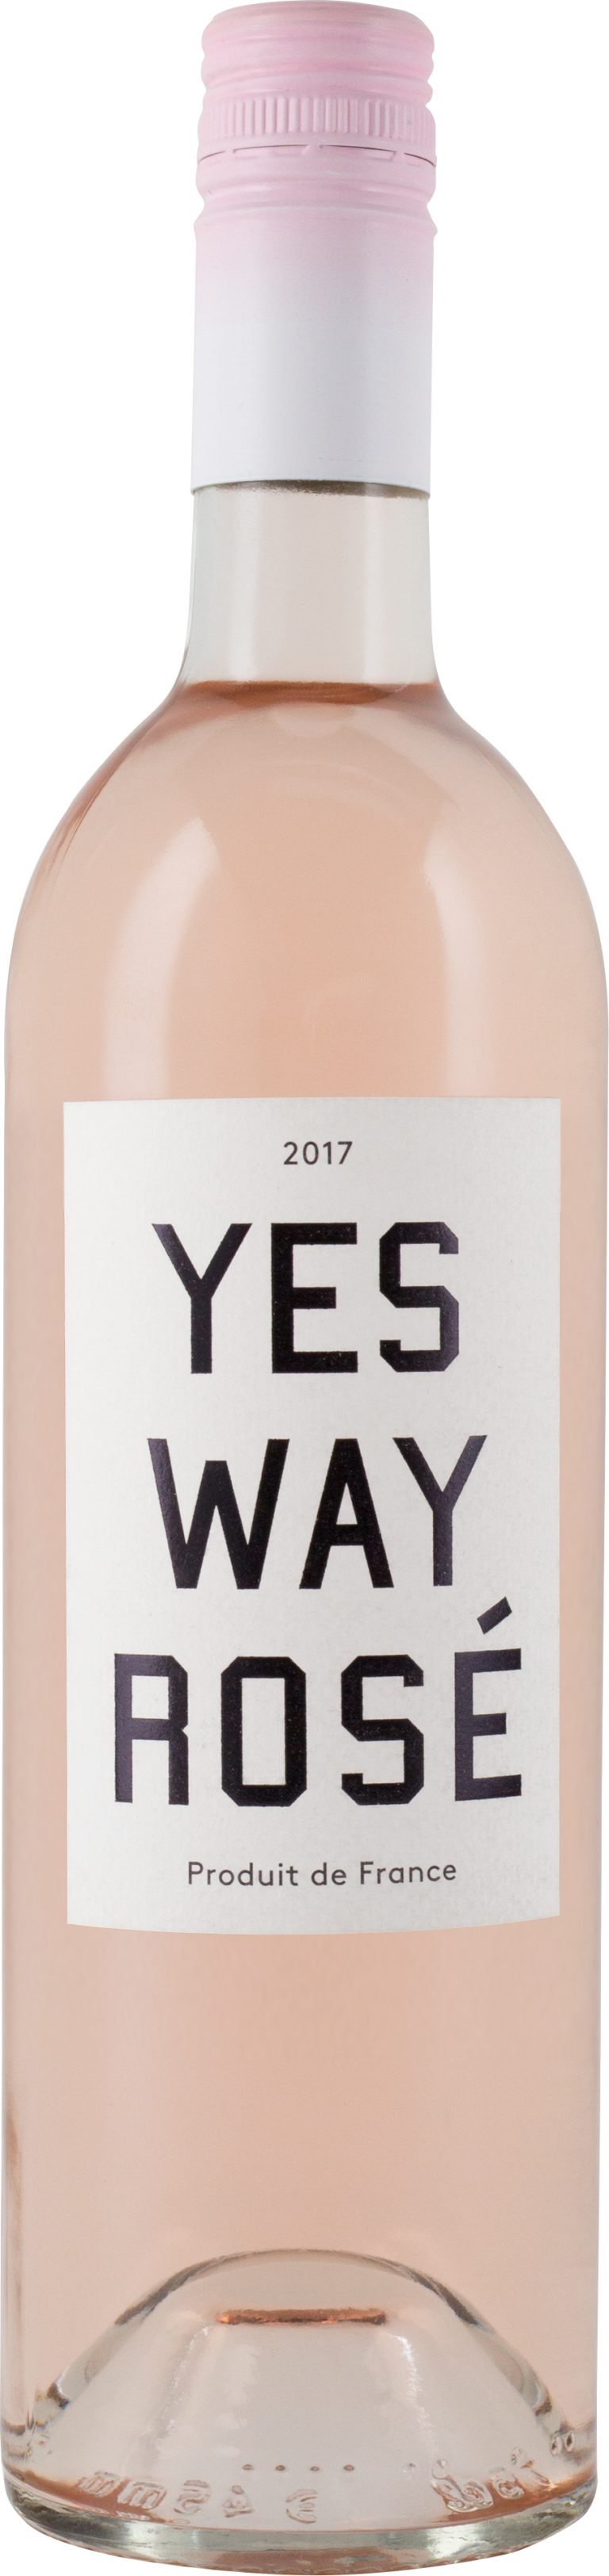 Yes Way Rose Best Wine Package Designs